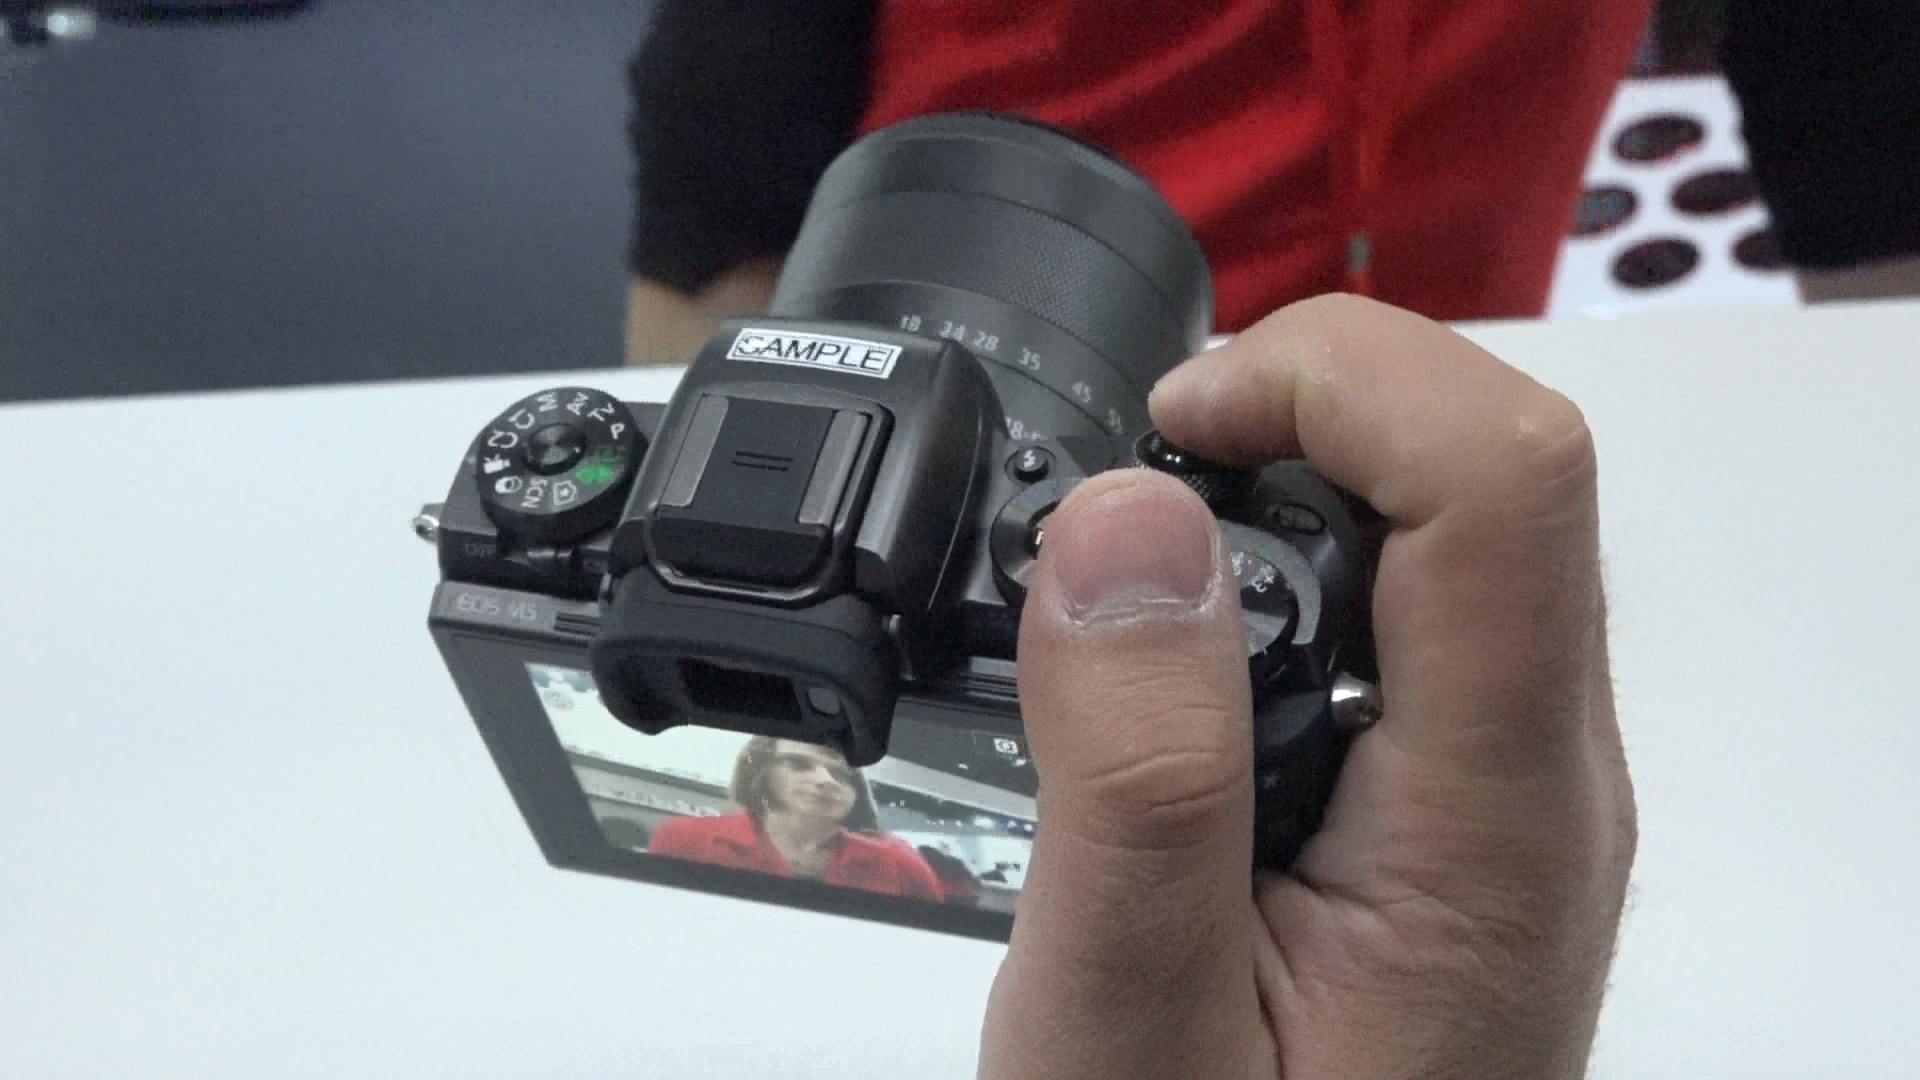 Canon EOS M5 ön inceleme 'Yeni nesil vLOG kamerası ve dahası...'